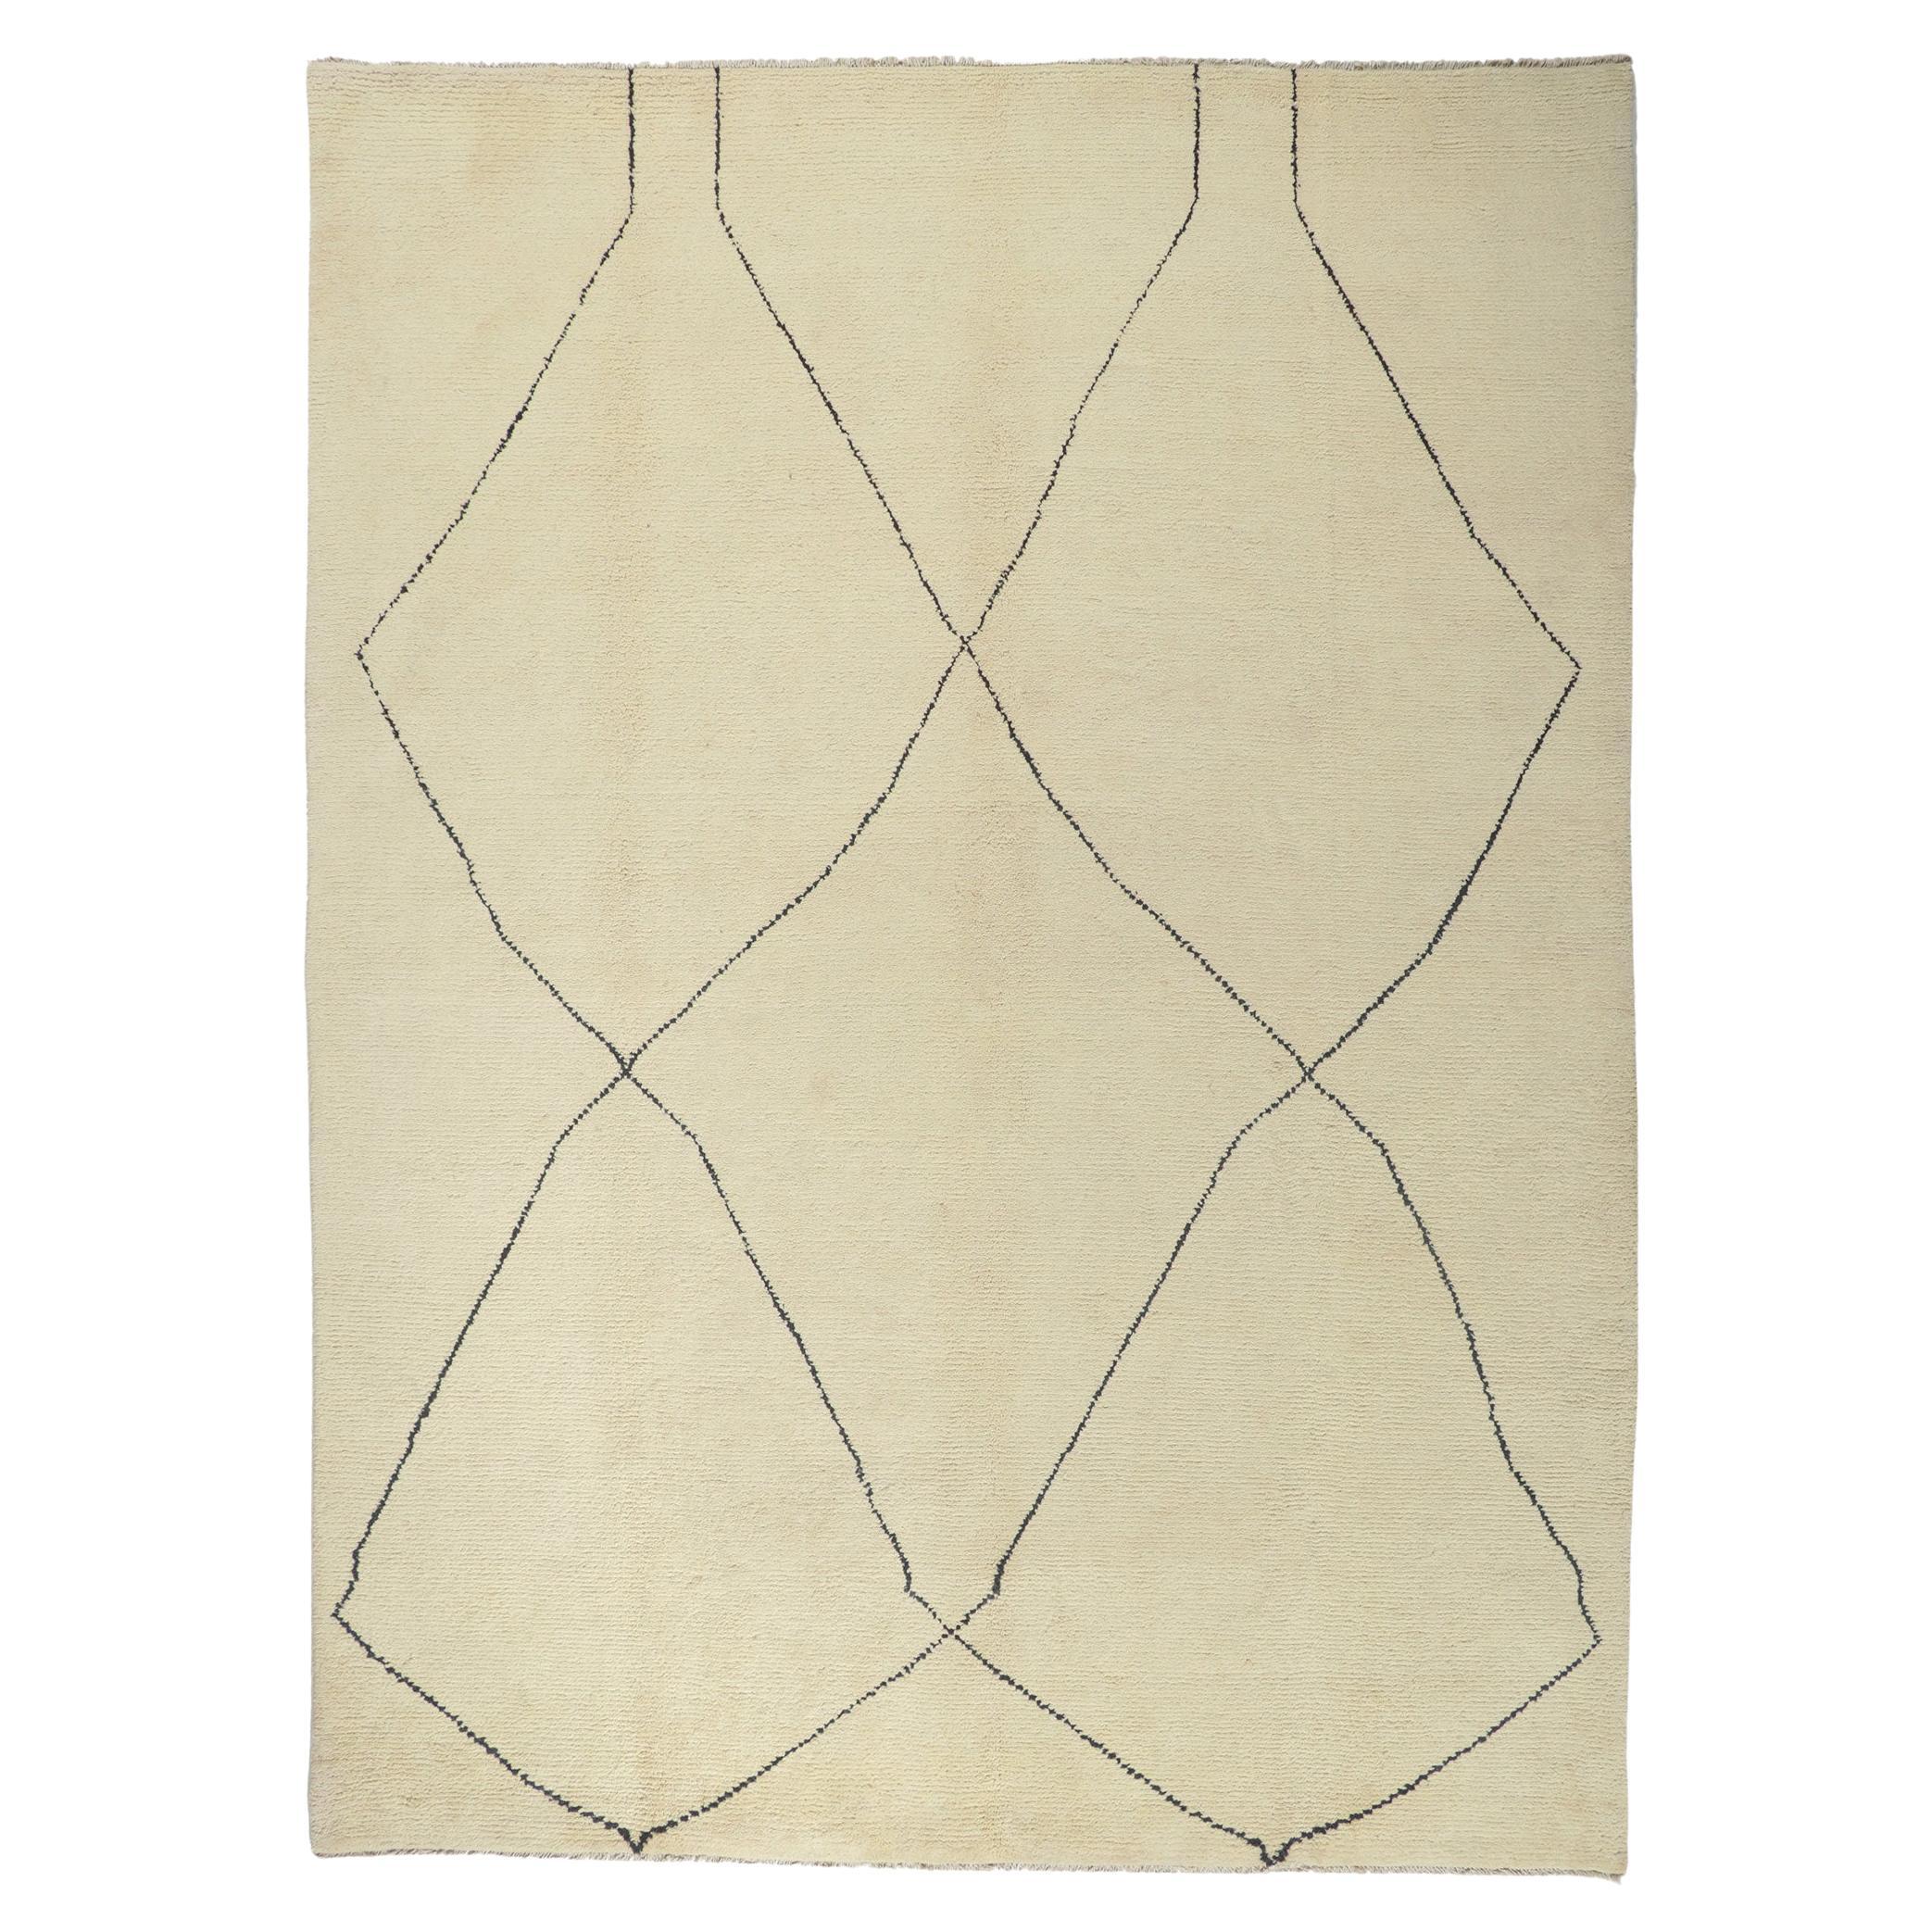 Großer moderner marokkanischer Teppich im minimalistischen Stil, Boho-Chic